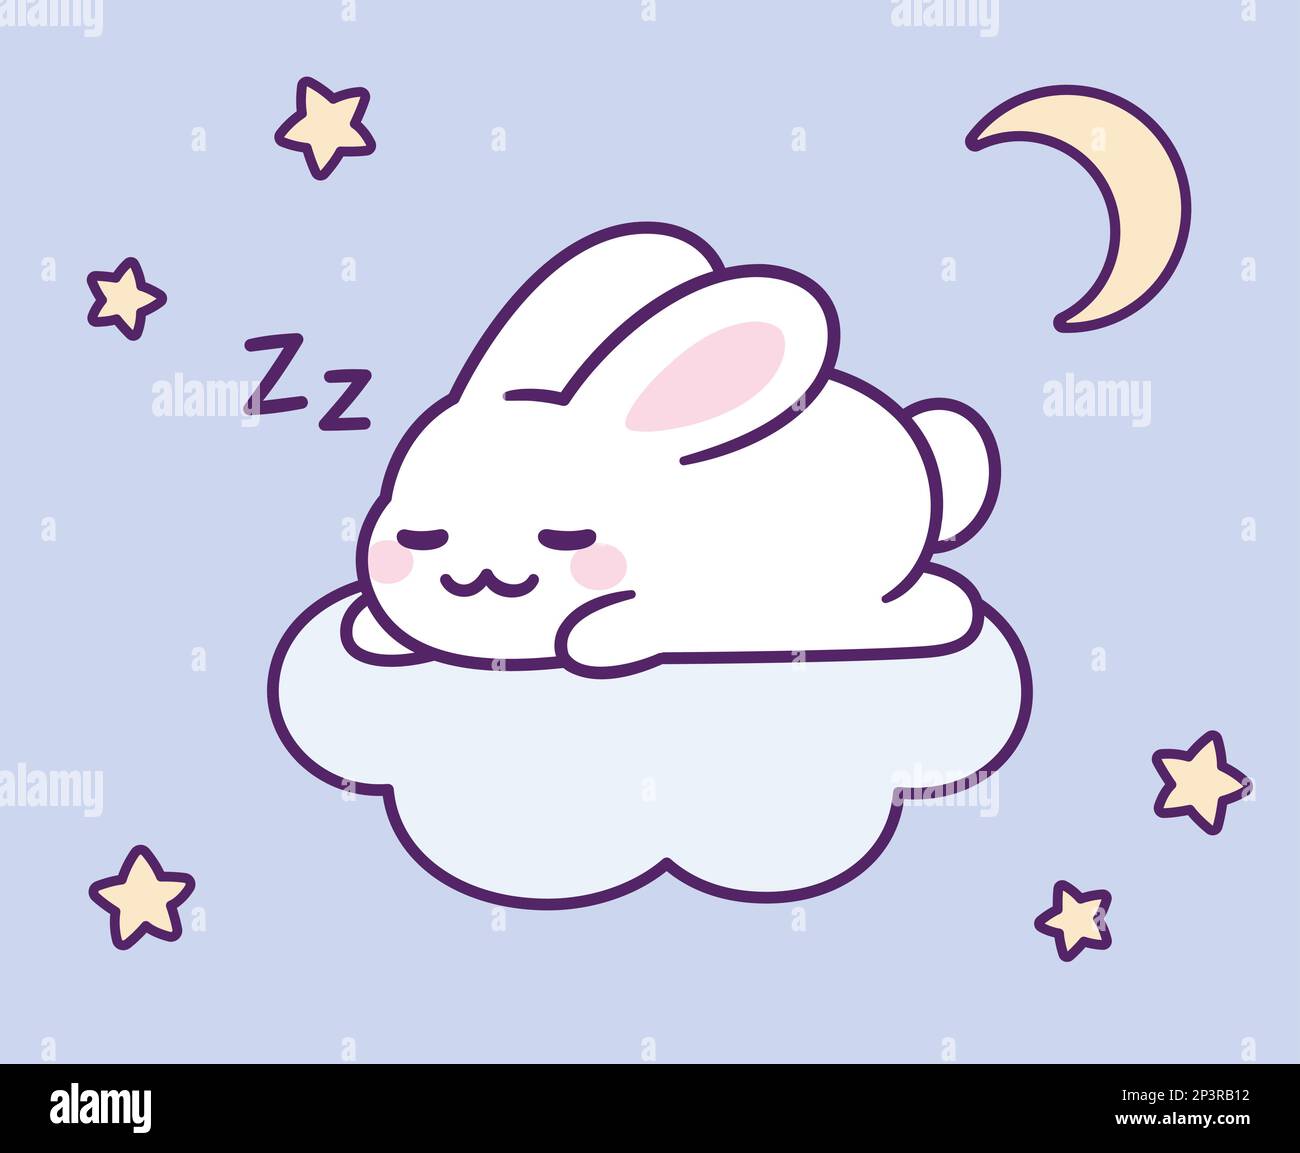 Joli lapin de dessin animé dormant sur le nuage dans le ciel nocturne. Bonne nuit, le lapin kawaii est tiré à la main. Illustration de clip art vectoriel isolée. Illustration de Vecteur